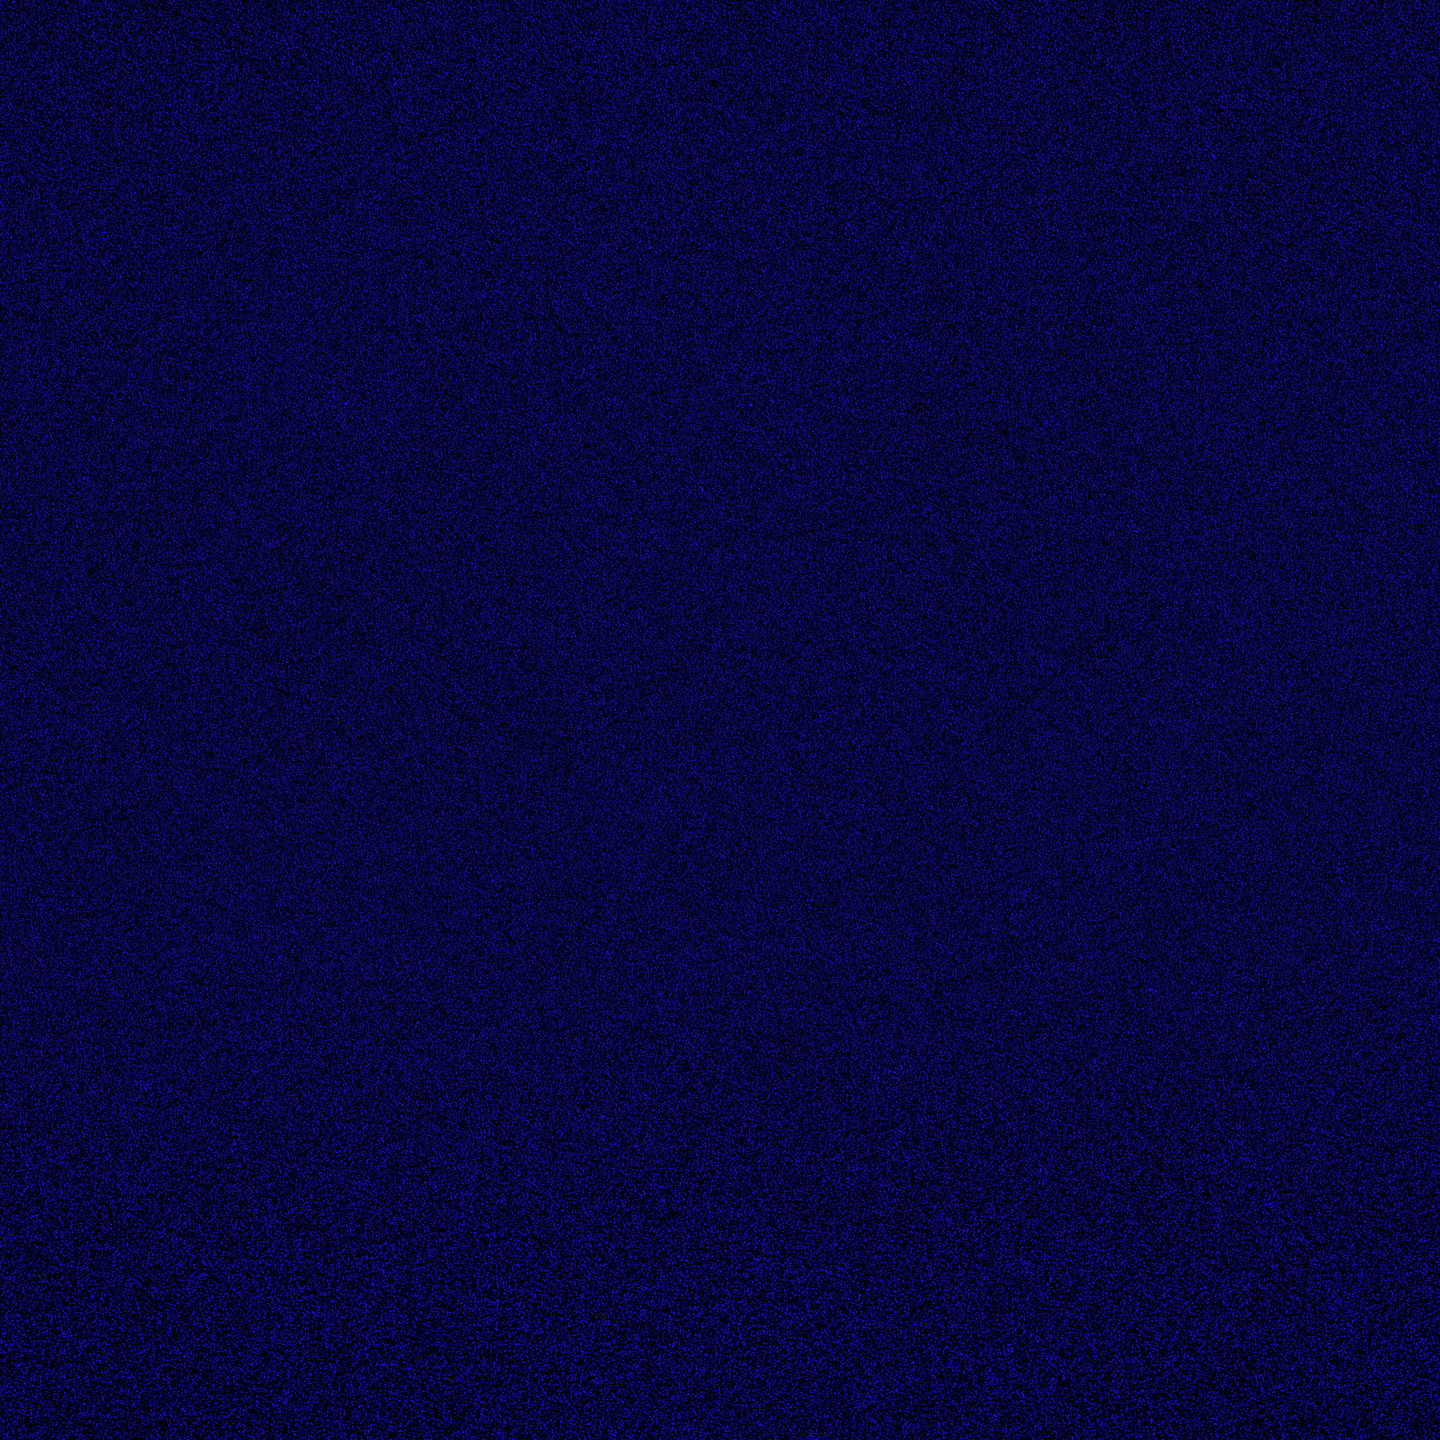 Dark Blue Background 